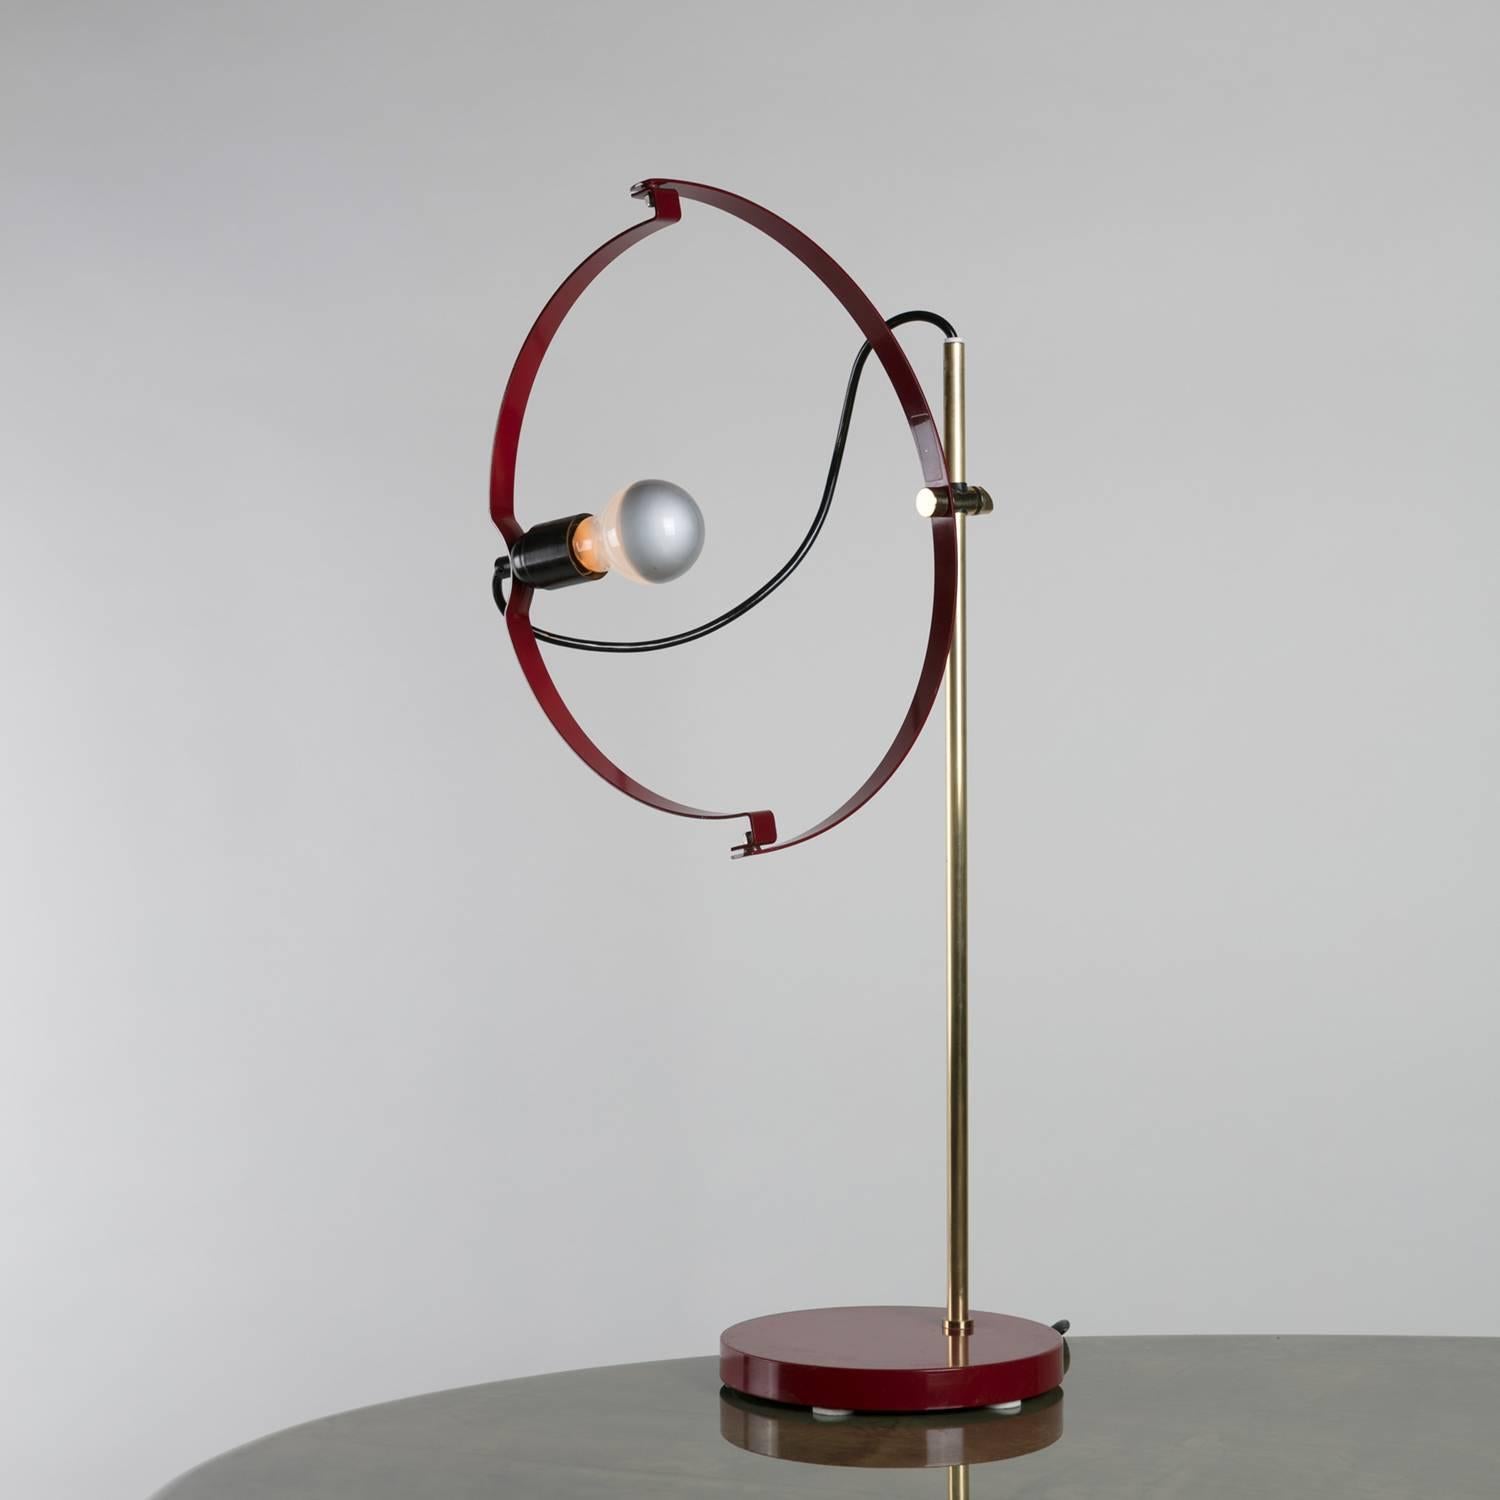 Bemerkenswerte Tischleuchte von Reggiani.
Durch die drehbaren, halbkreisförmigen Arme kann die Lichtquelle frei positioniert werden.